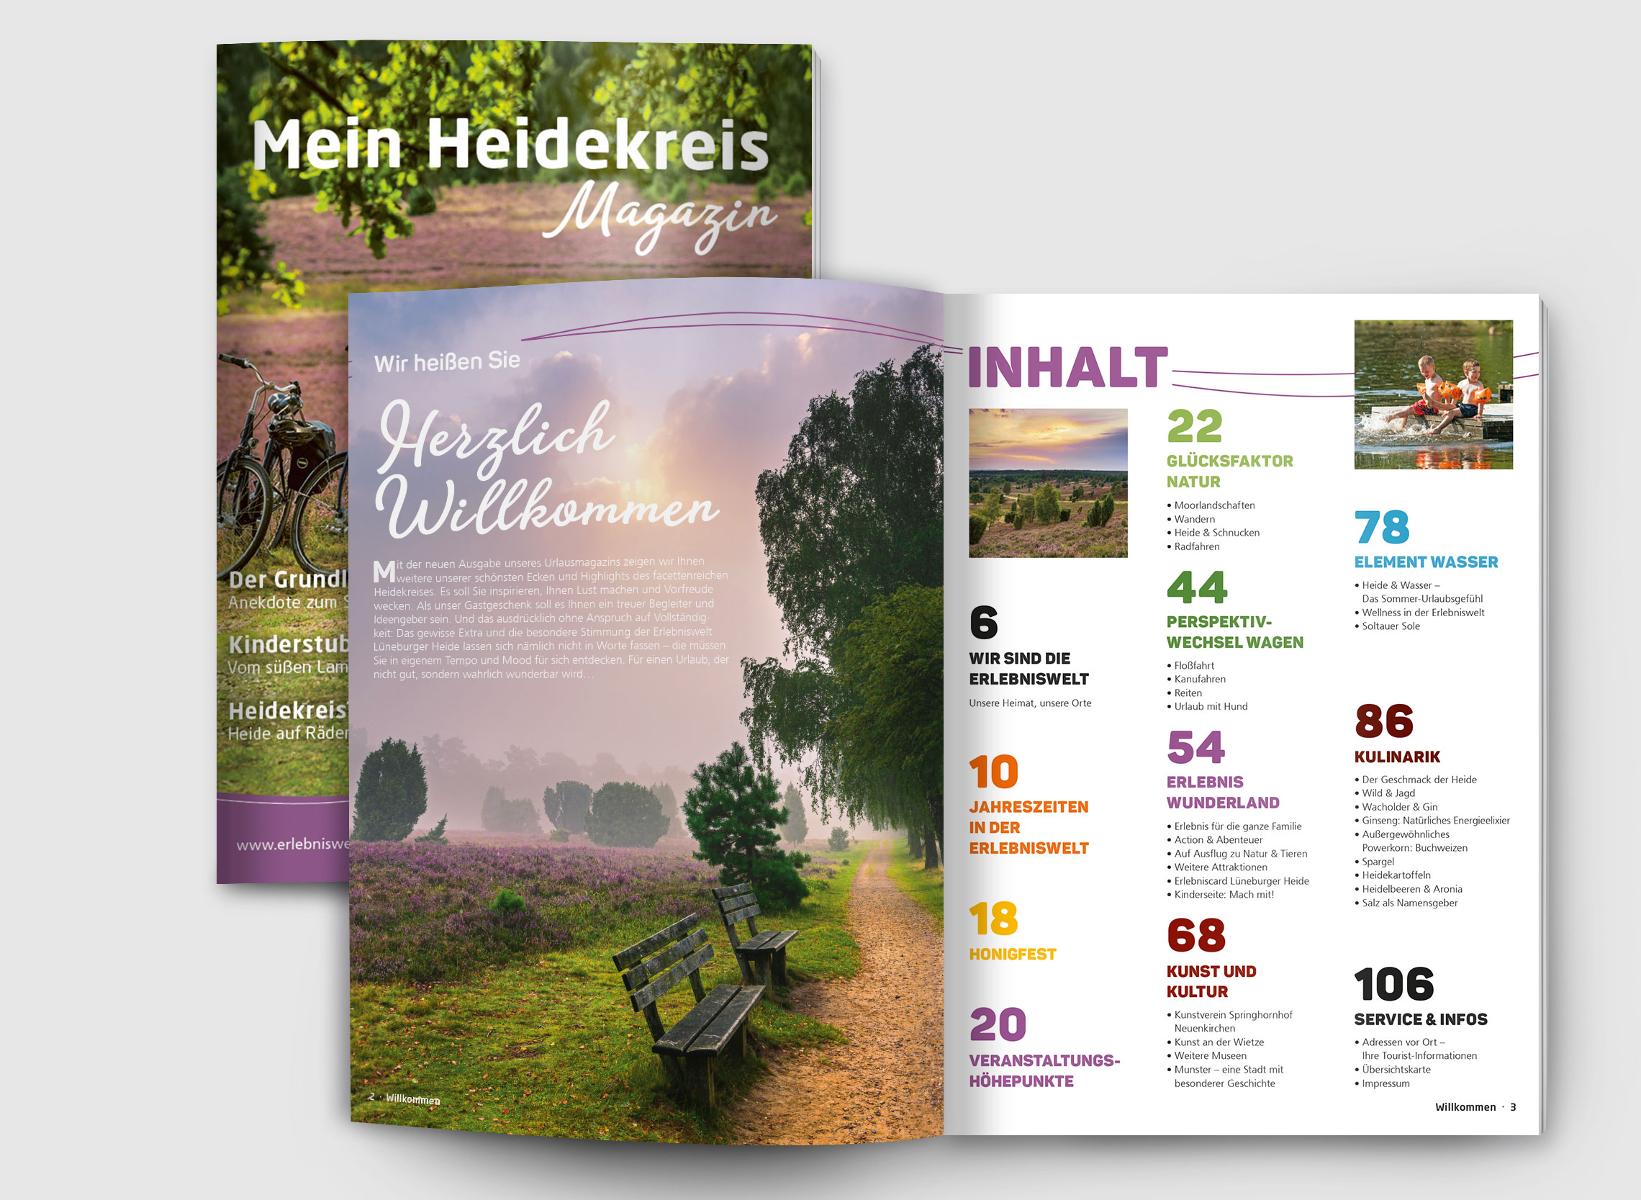 Das Heidekreis Magazin kehrt in seiner 2. Auflage noch schöner und faszinierender zurück, um die vielfältige Welt der Lüneburger Heide widerzuspiegeln. Es lädt dazu ein, die Schönheit und Vielfalt des Heidekreises auf neue Weise zu erleben und zu genießen.